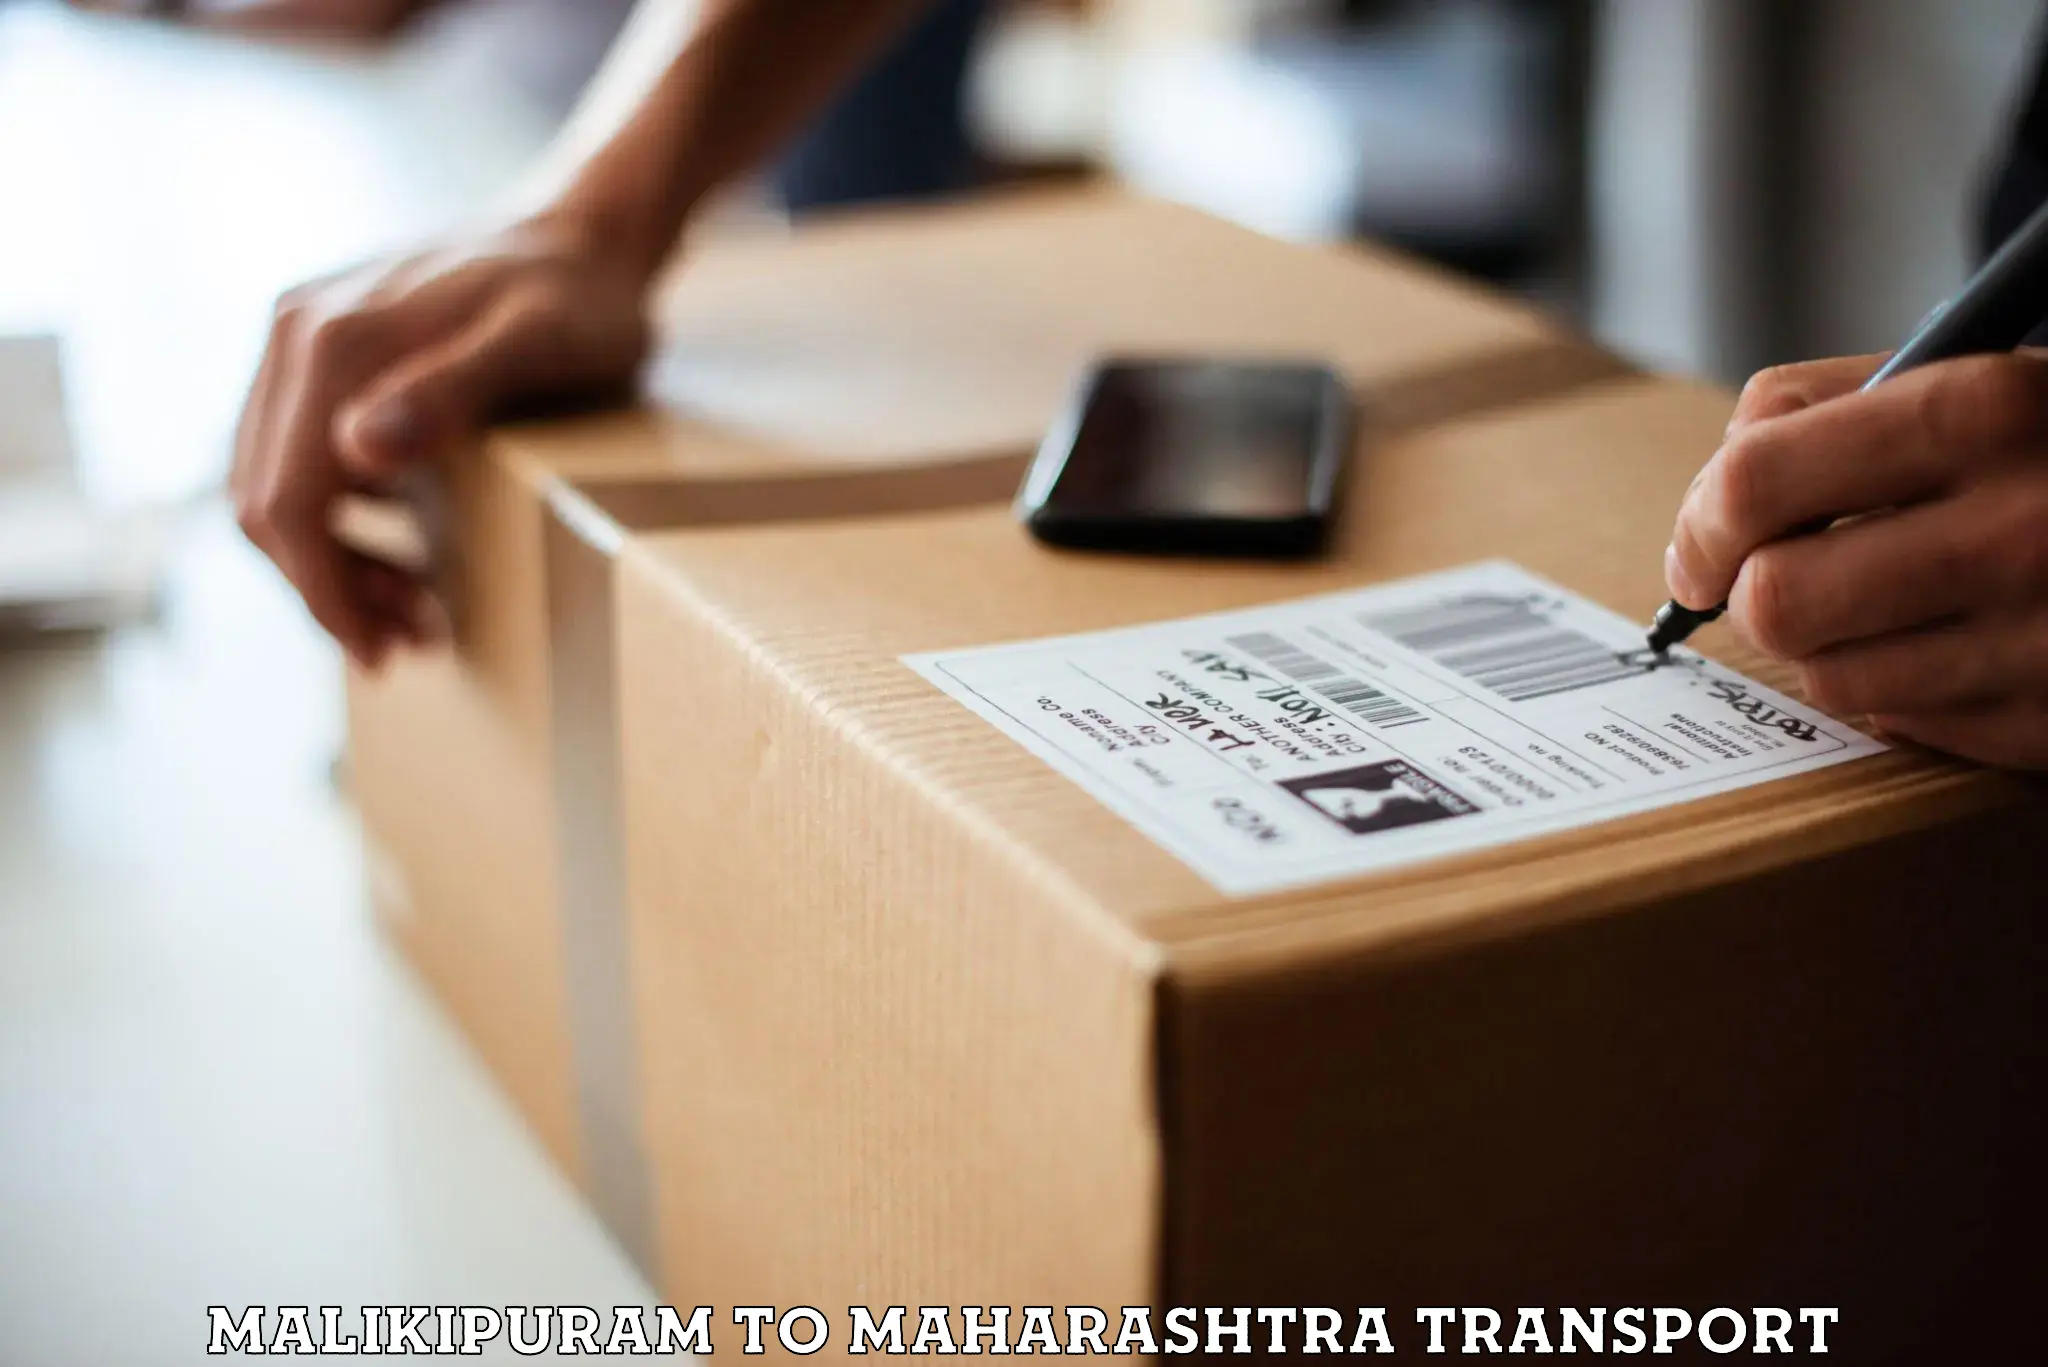 Furniture transport service Malikipuram to Mudal